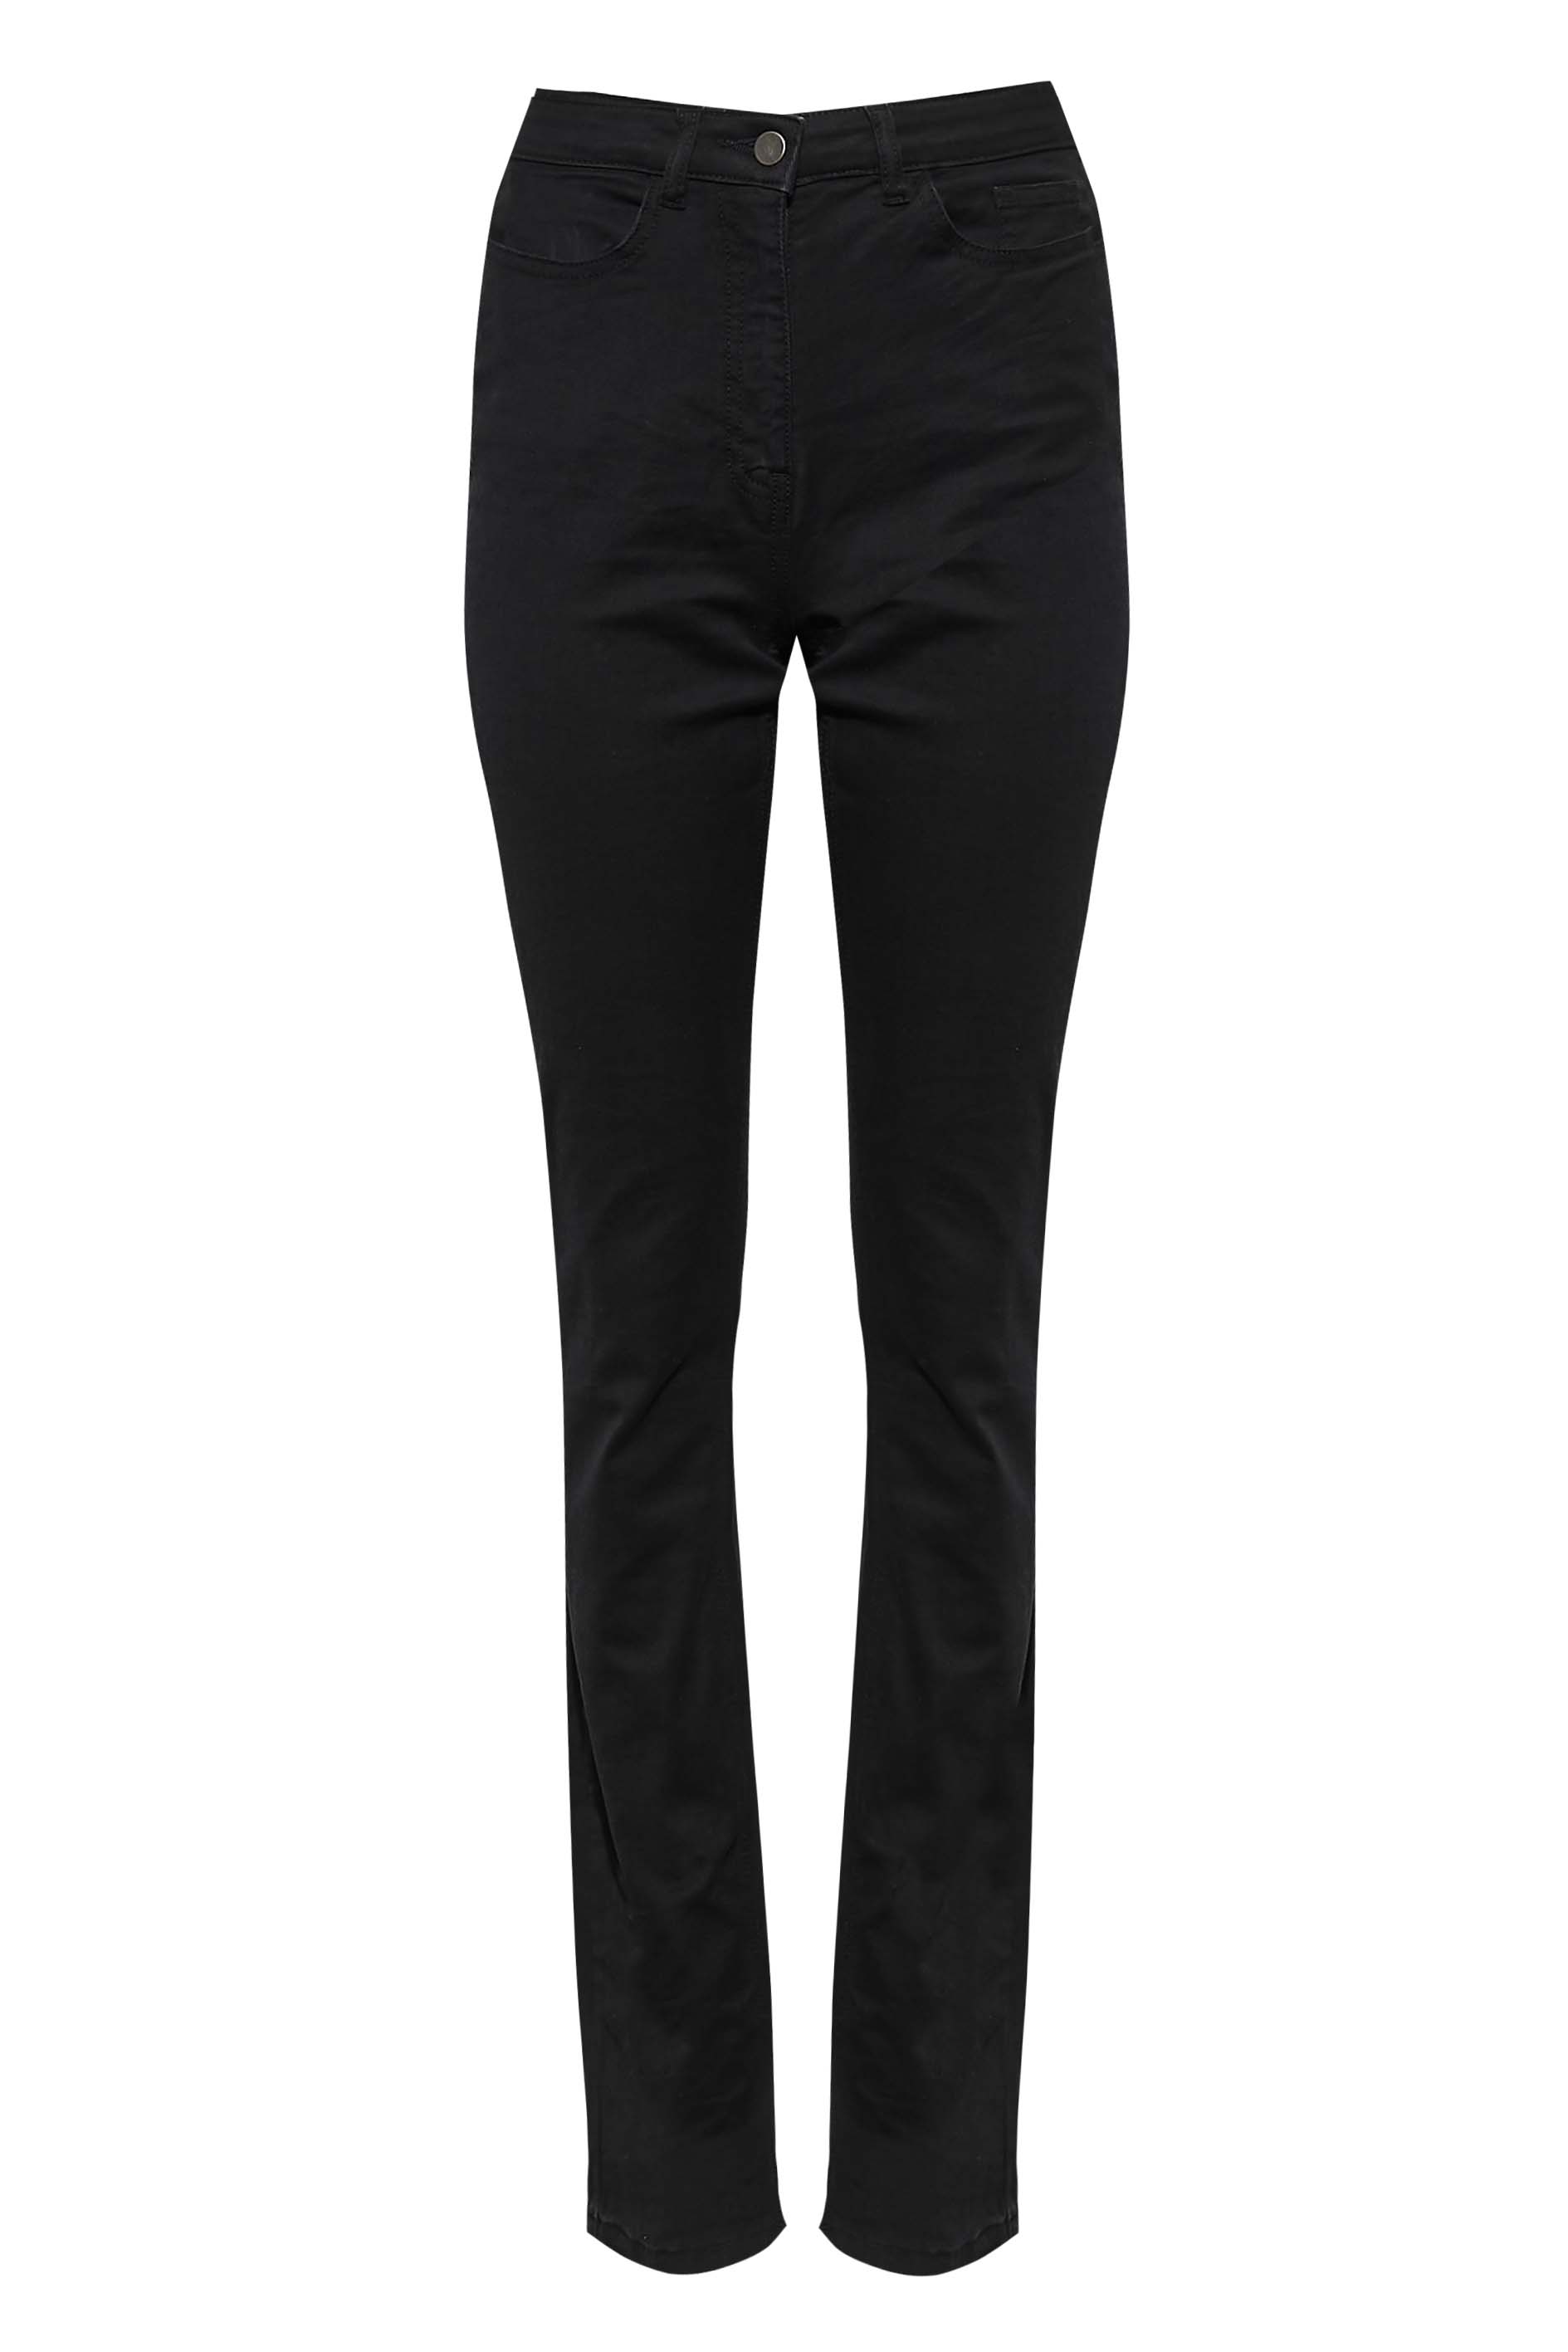 LTS Tall Women's Black MIA Slim Leg Jeans | Long Tall Sally 2